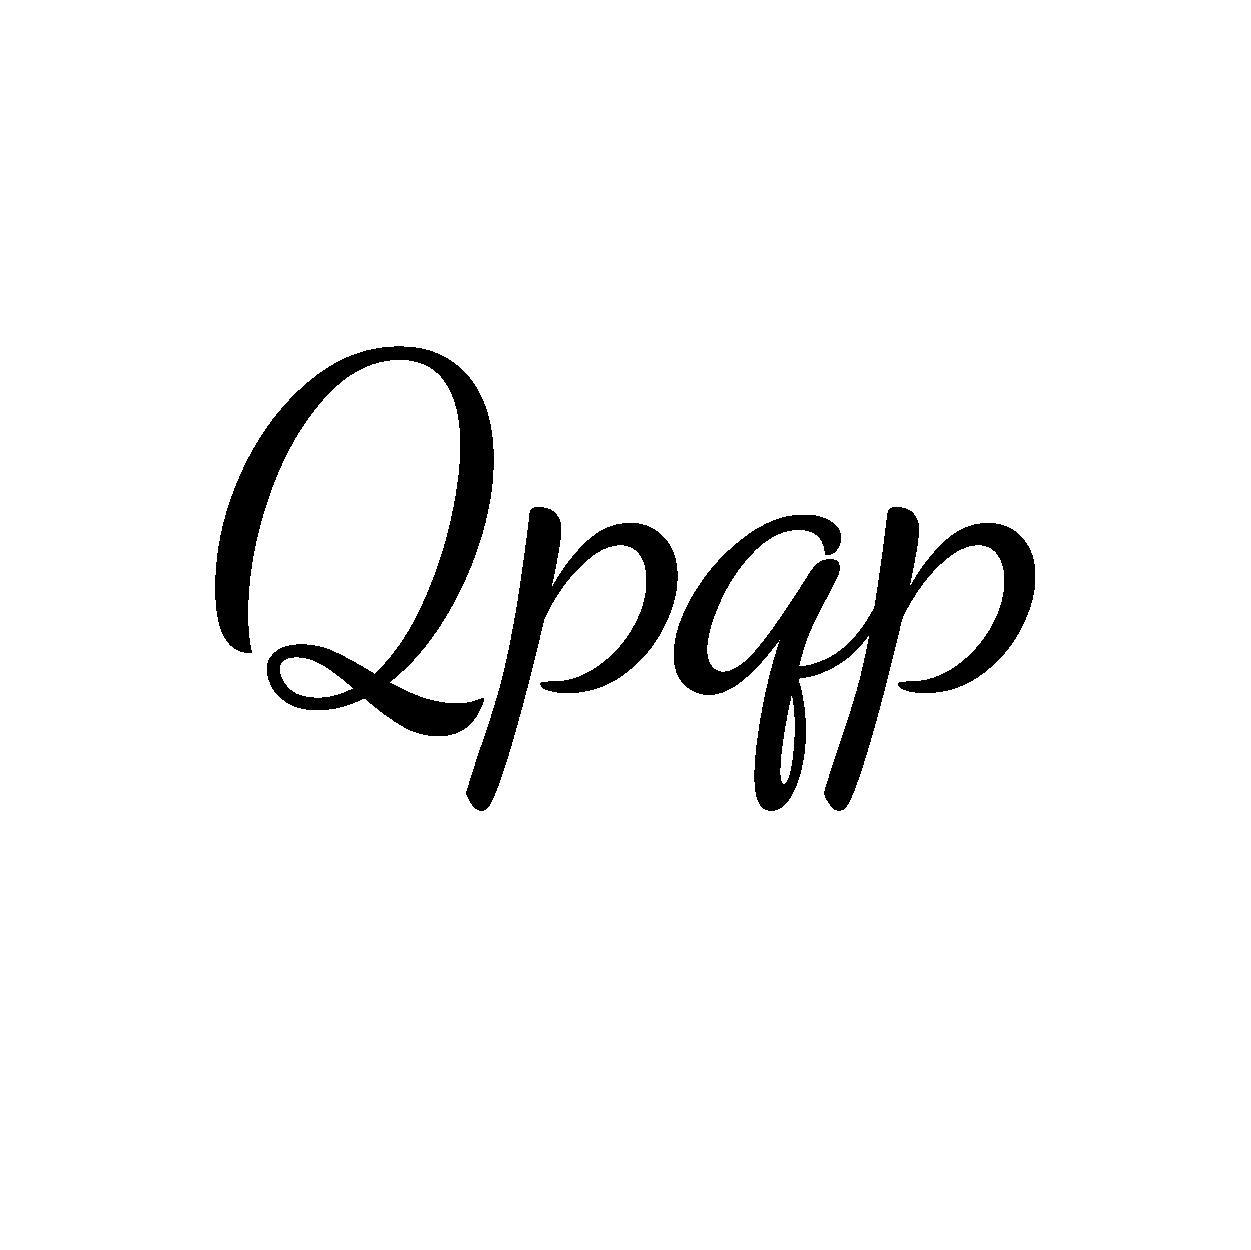 QPQP